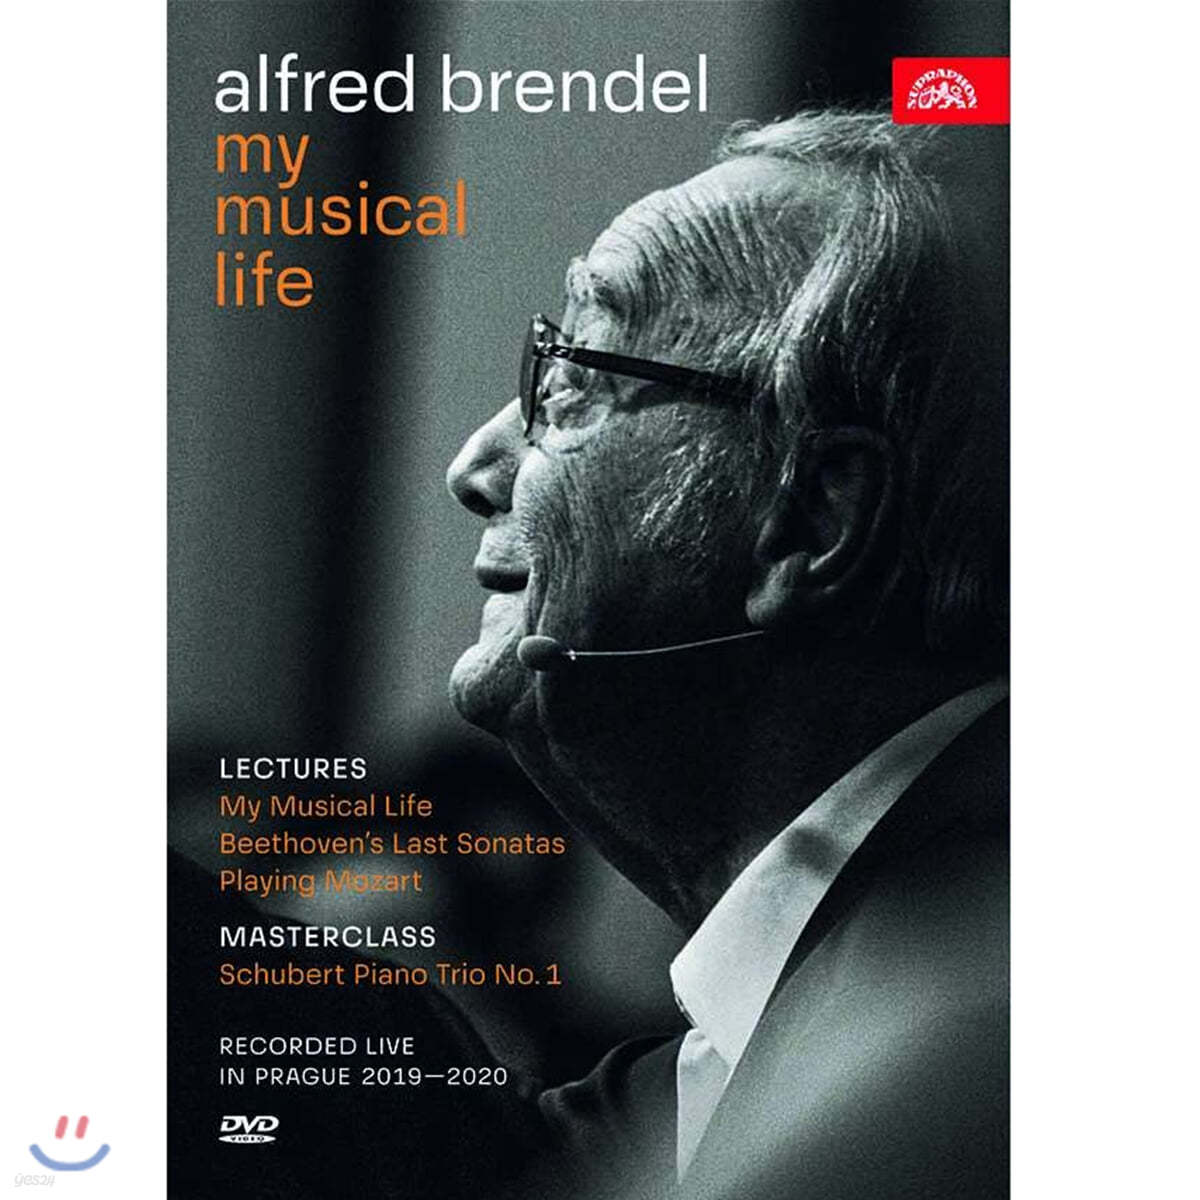 알프레드 브렌델: 강연과 마스터 클래식 (Alfred Brendel: My Musical Life) 